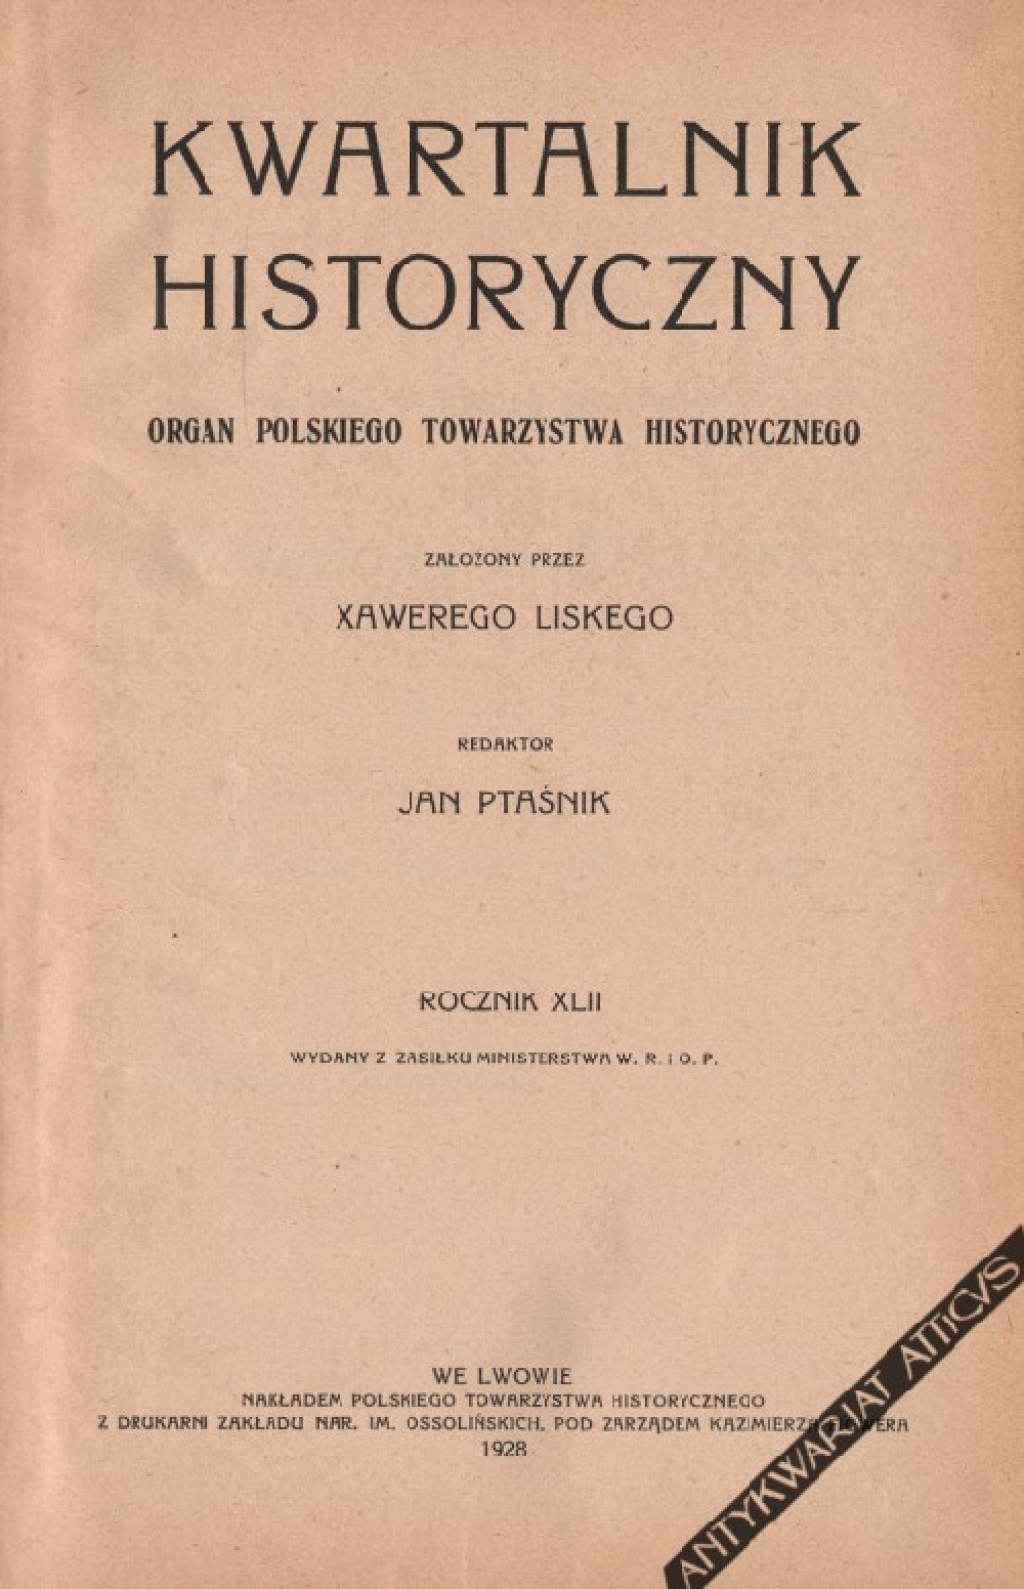 Kwartalnik historyczny. Organ Polskiego Towarzystwa Historycznego Rocznik XLII [1928]